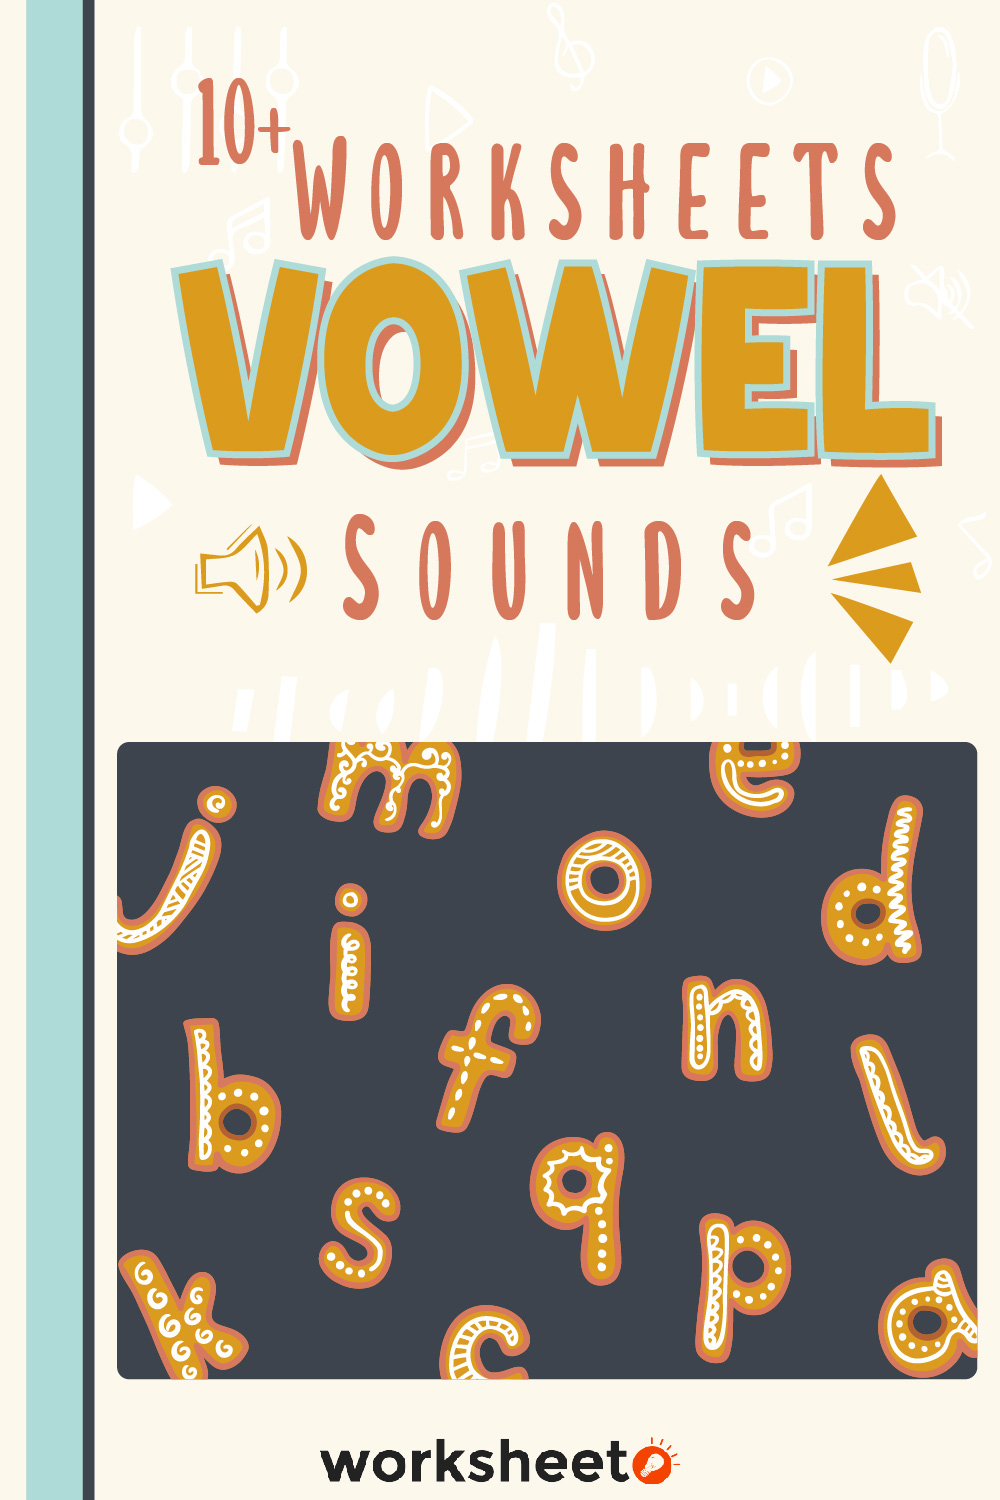 18 Images of Worksheets Vowel Sounds